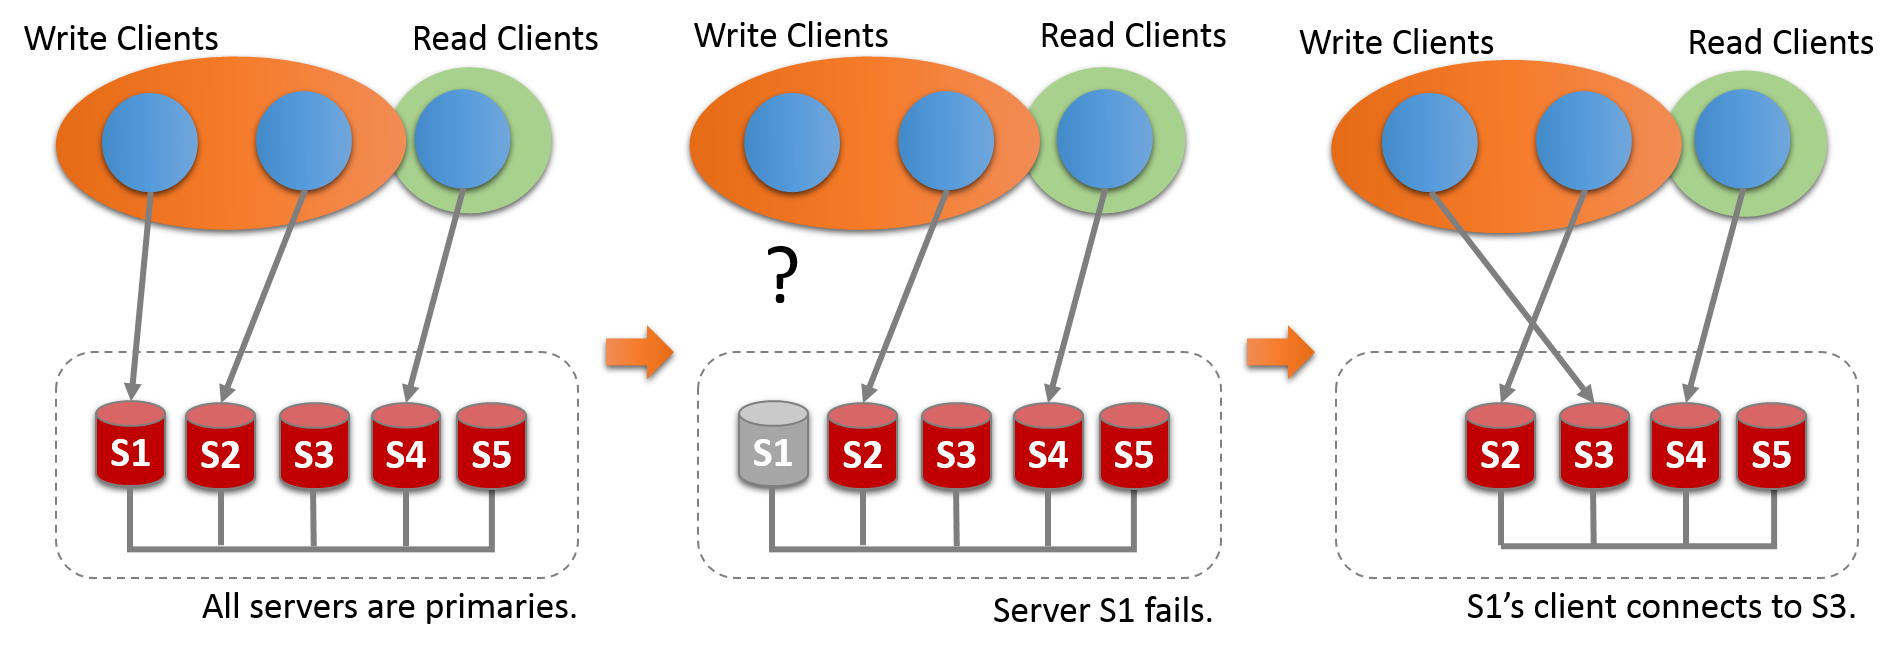 五个服务器实例S1，S2，S3，S4和S5被部署为互连组。 所有的服务器都是初选。 写客户端正在与服务器S1和S2通信，并且读客户端正在与服务器S4通信。 然后，服务器S1失败，破坏与其写入客户端的通信。 此客户端重新连接到服务器S3。